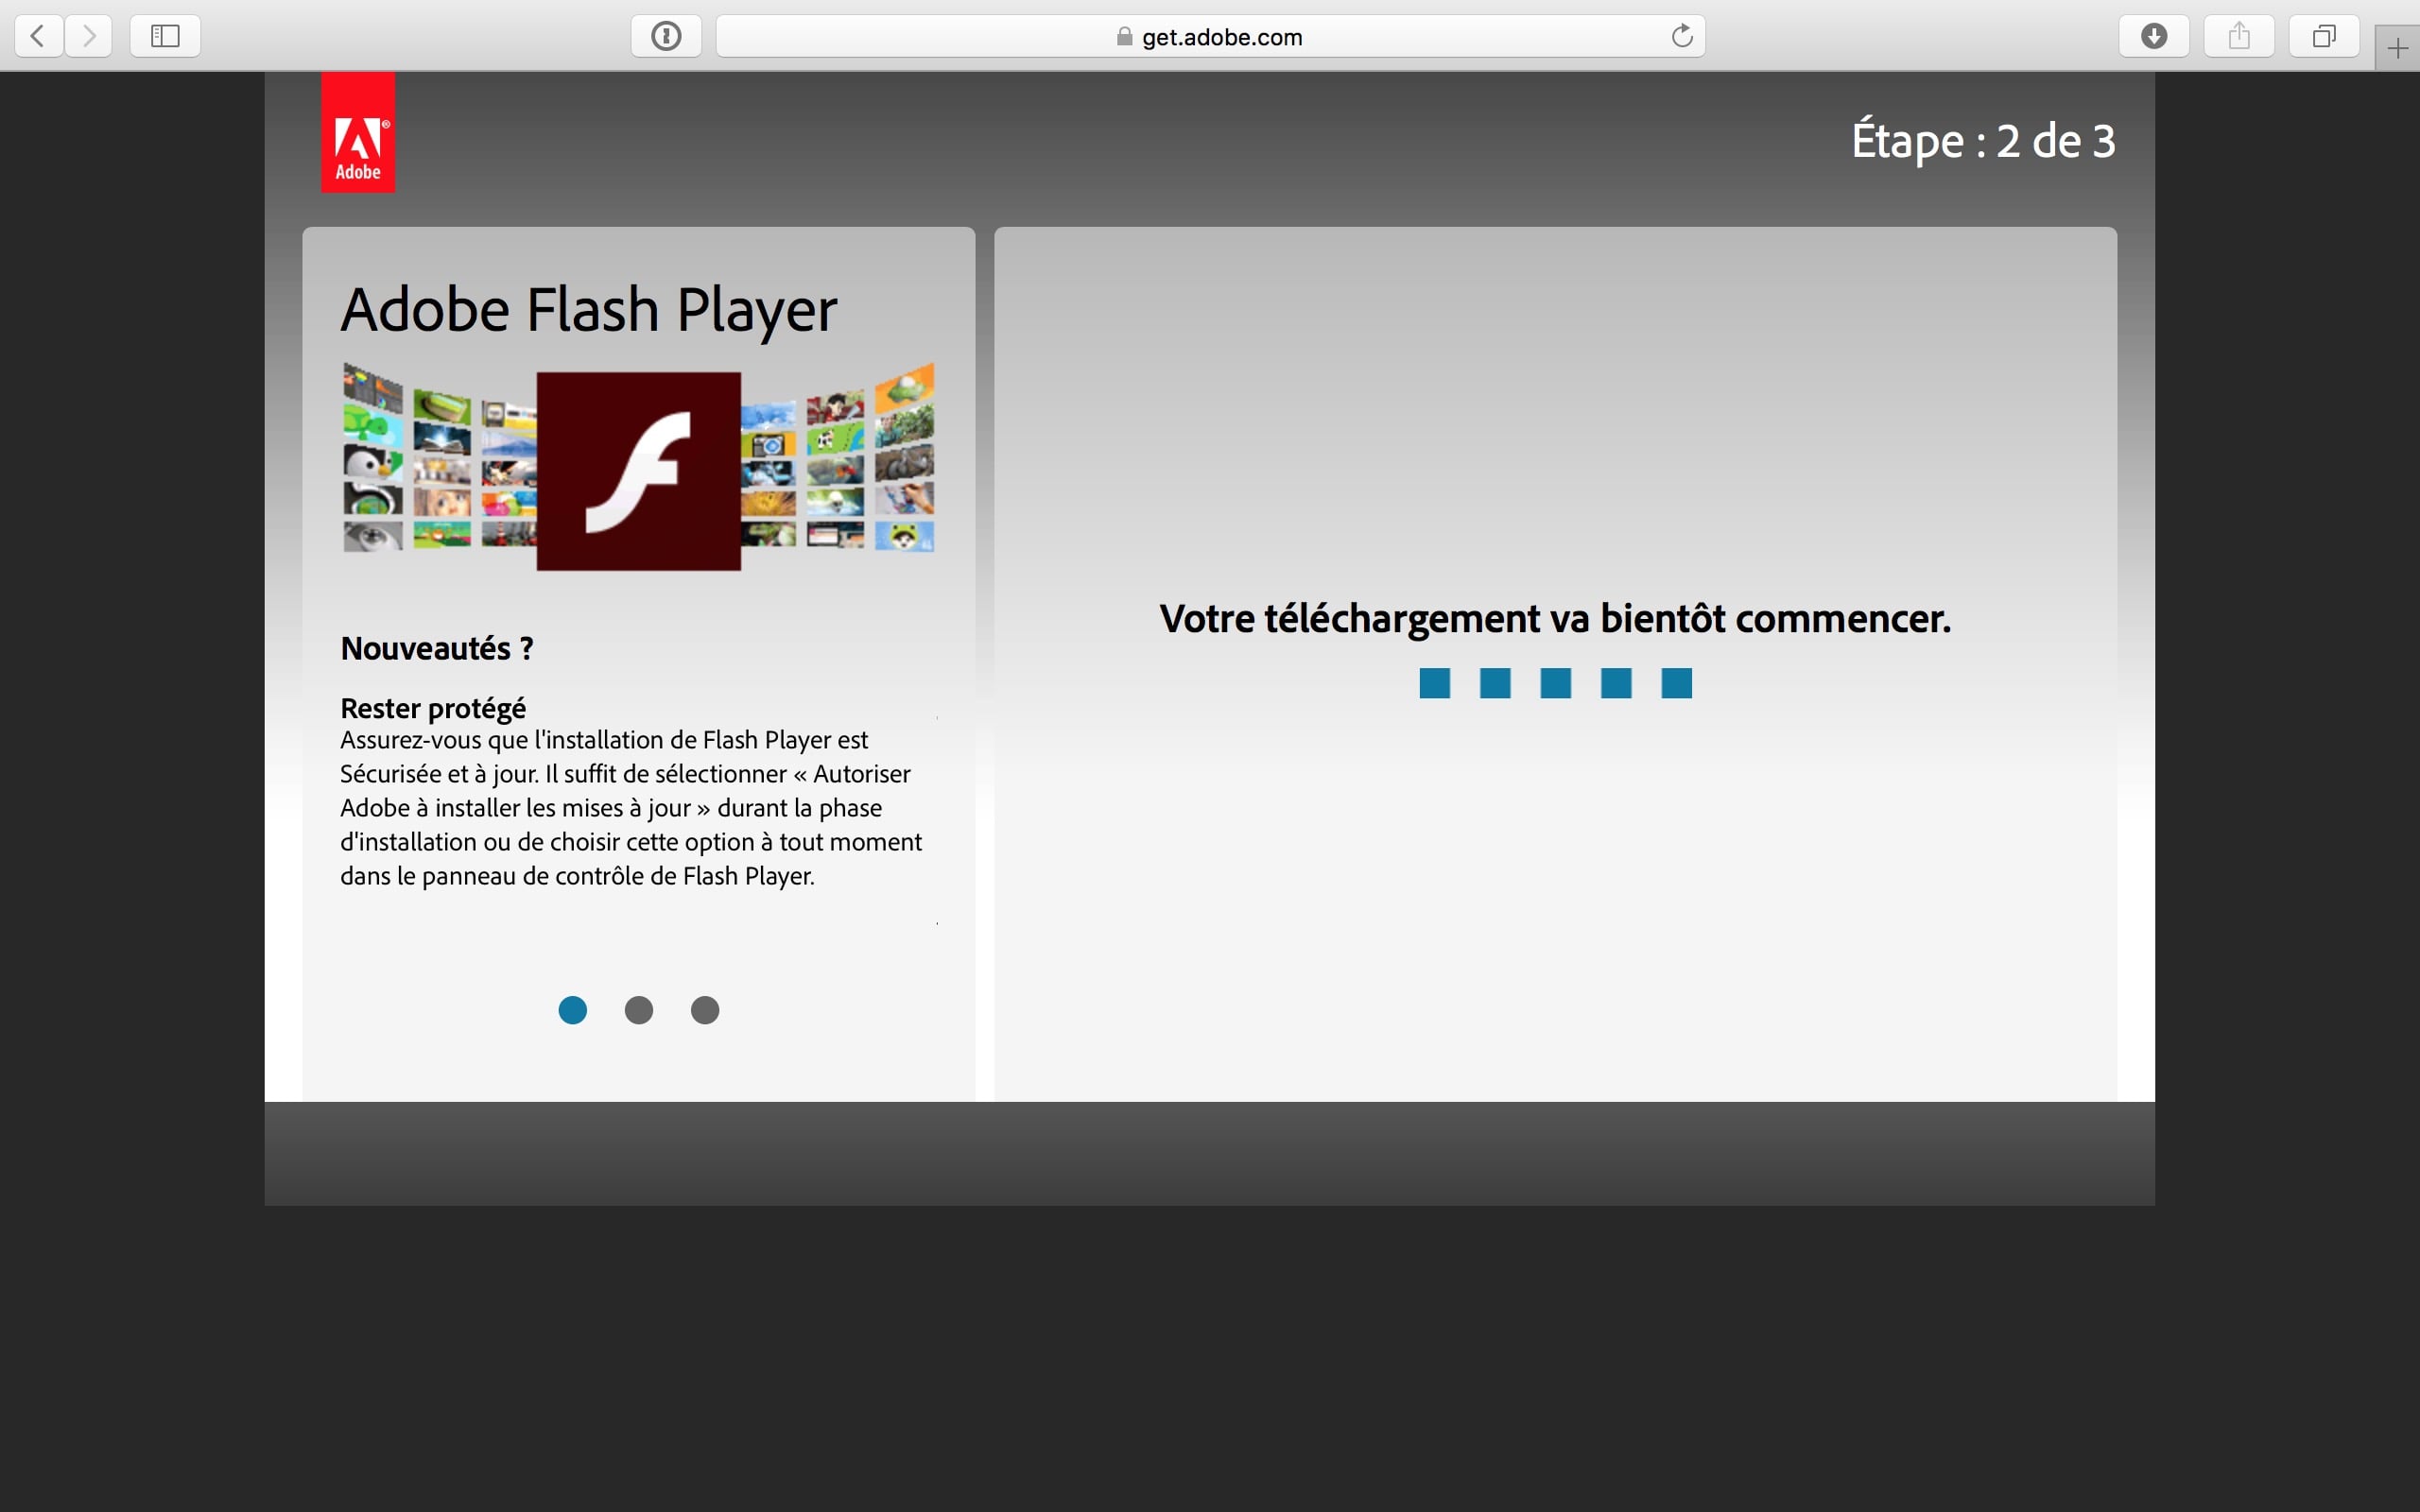 Adobe Flash Player For Mac Os Sierra 10.12